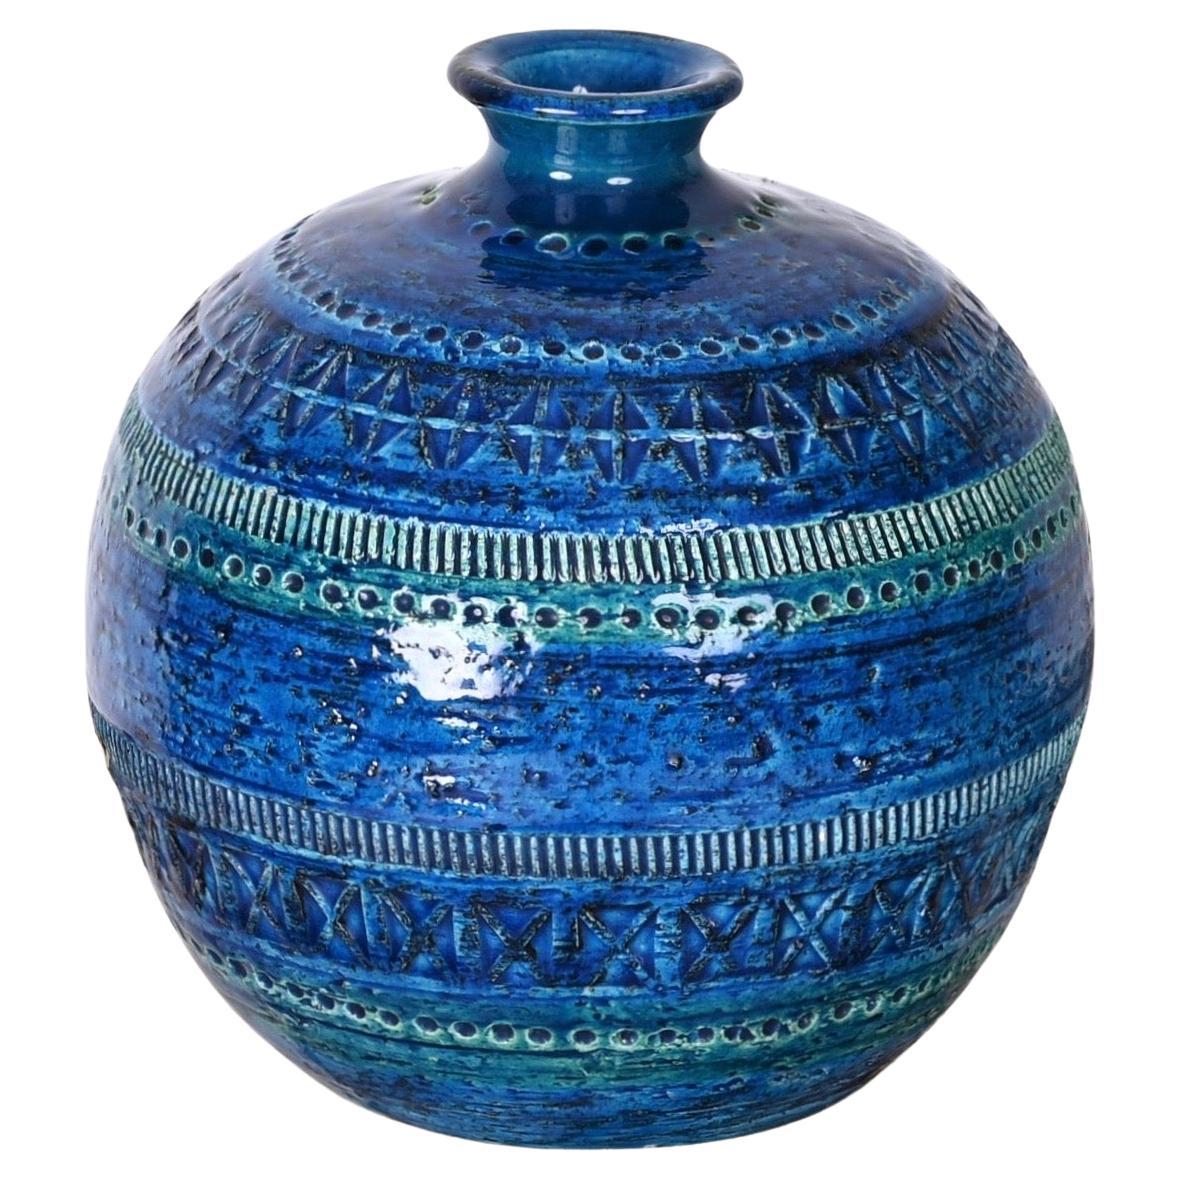 Aldo Londi Terracotta Ceramic Rimini Blue Vase for Bitossi, Italy, 1960s